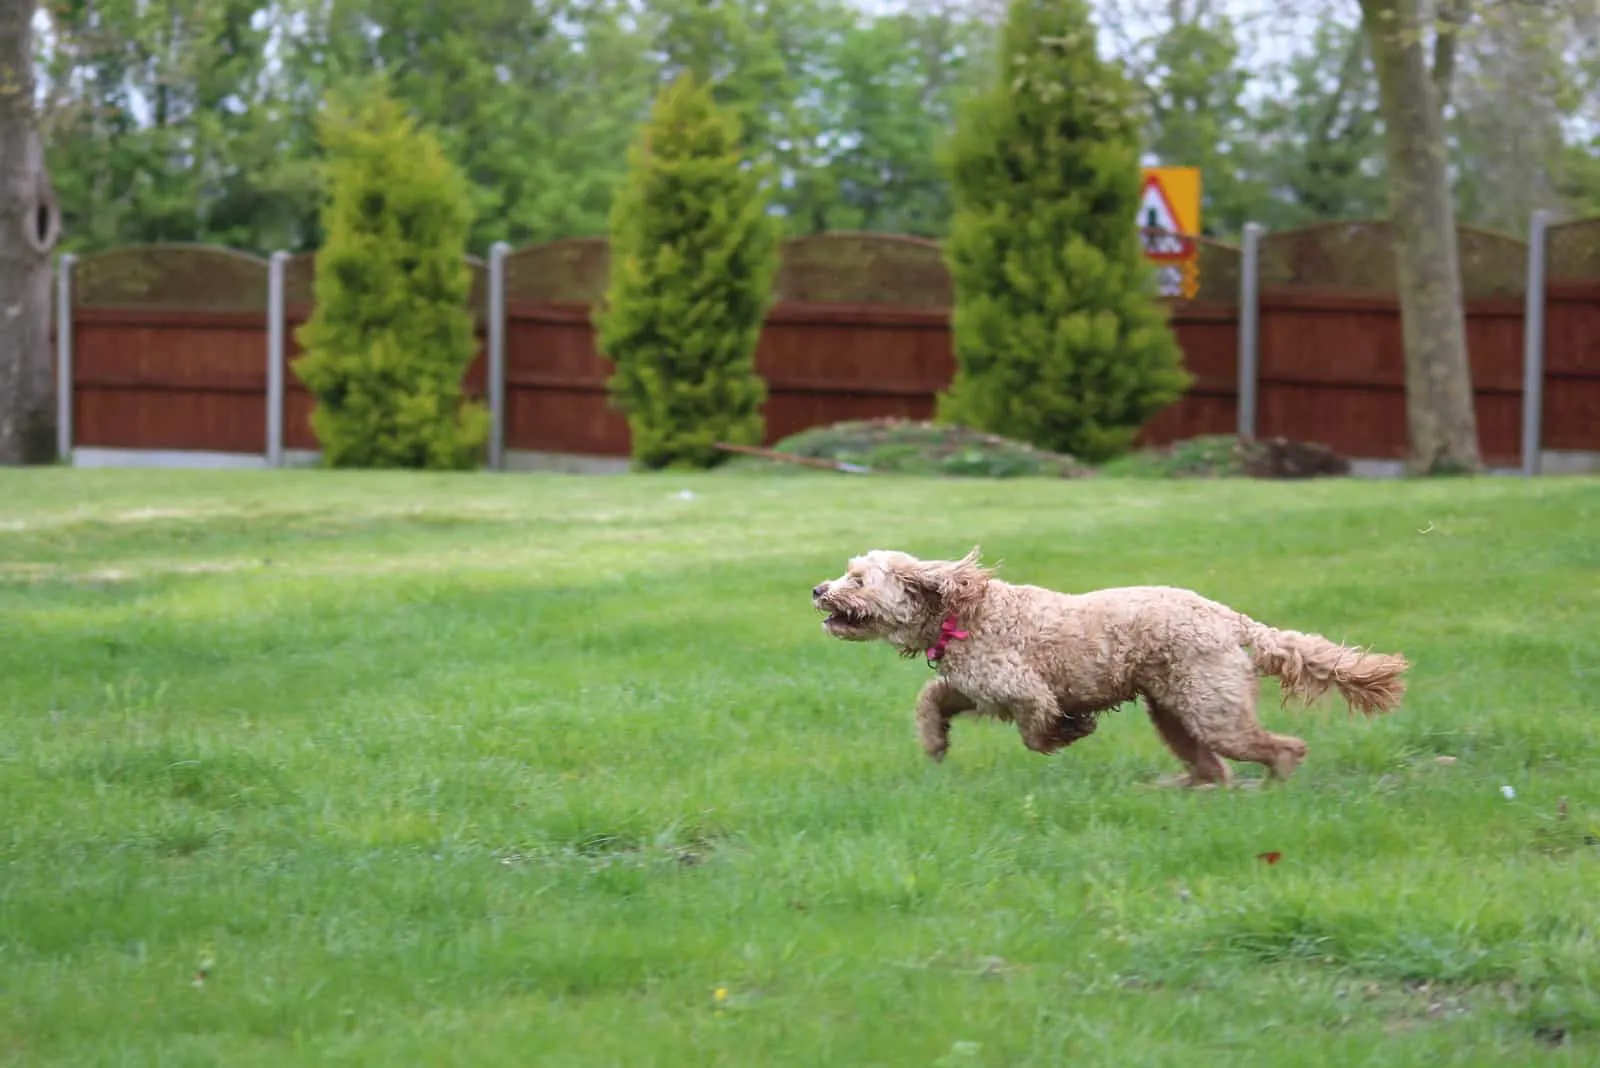 Cavapoo puppy runs around the garden